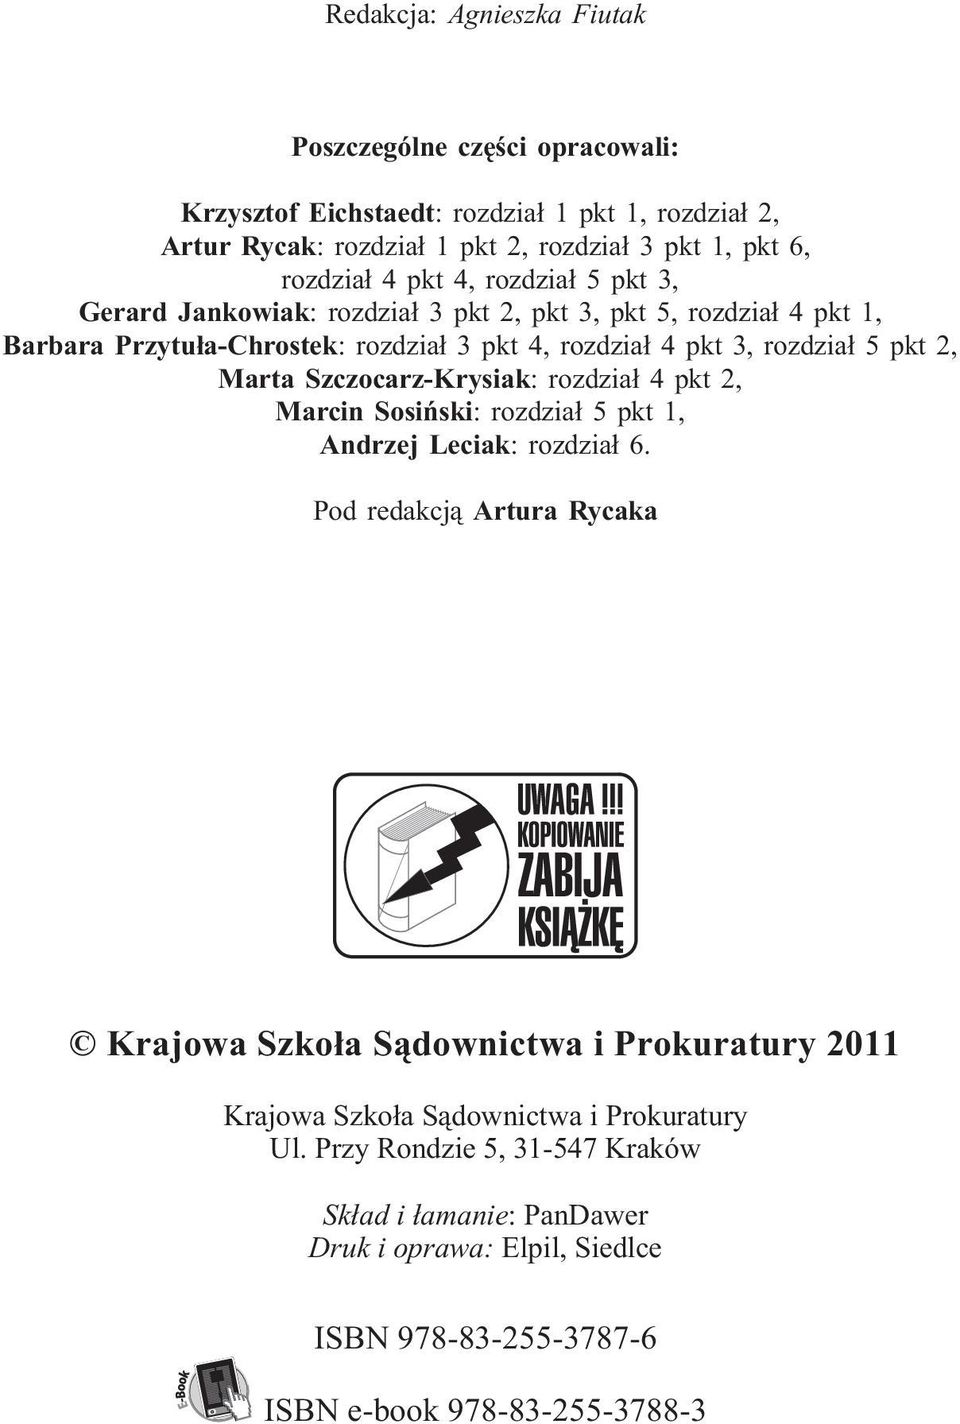 Marta Szczocarz-Krysiak: rozdzia³ 4 pkt 2, Marcin Sosiñski: rozdzia³ 5 pkt 1, Andrzej Leciak: rozdzia³ 6.